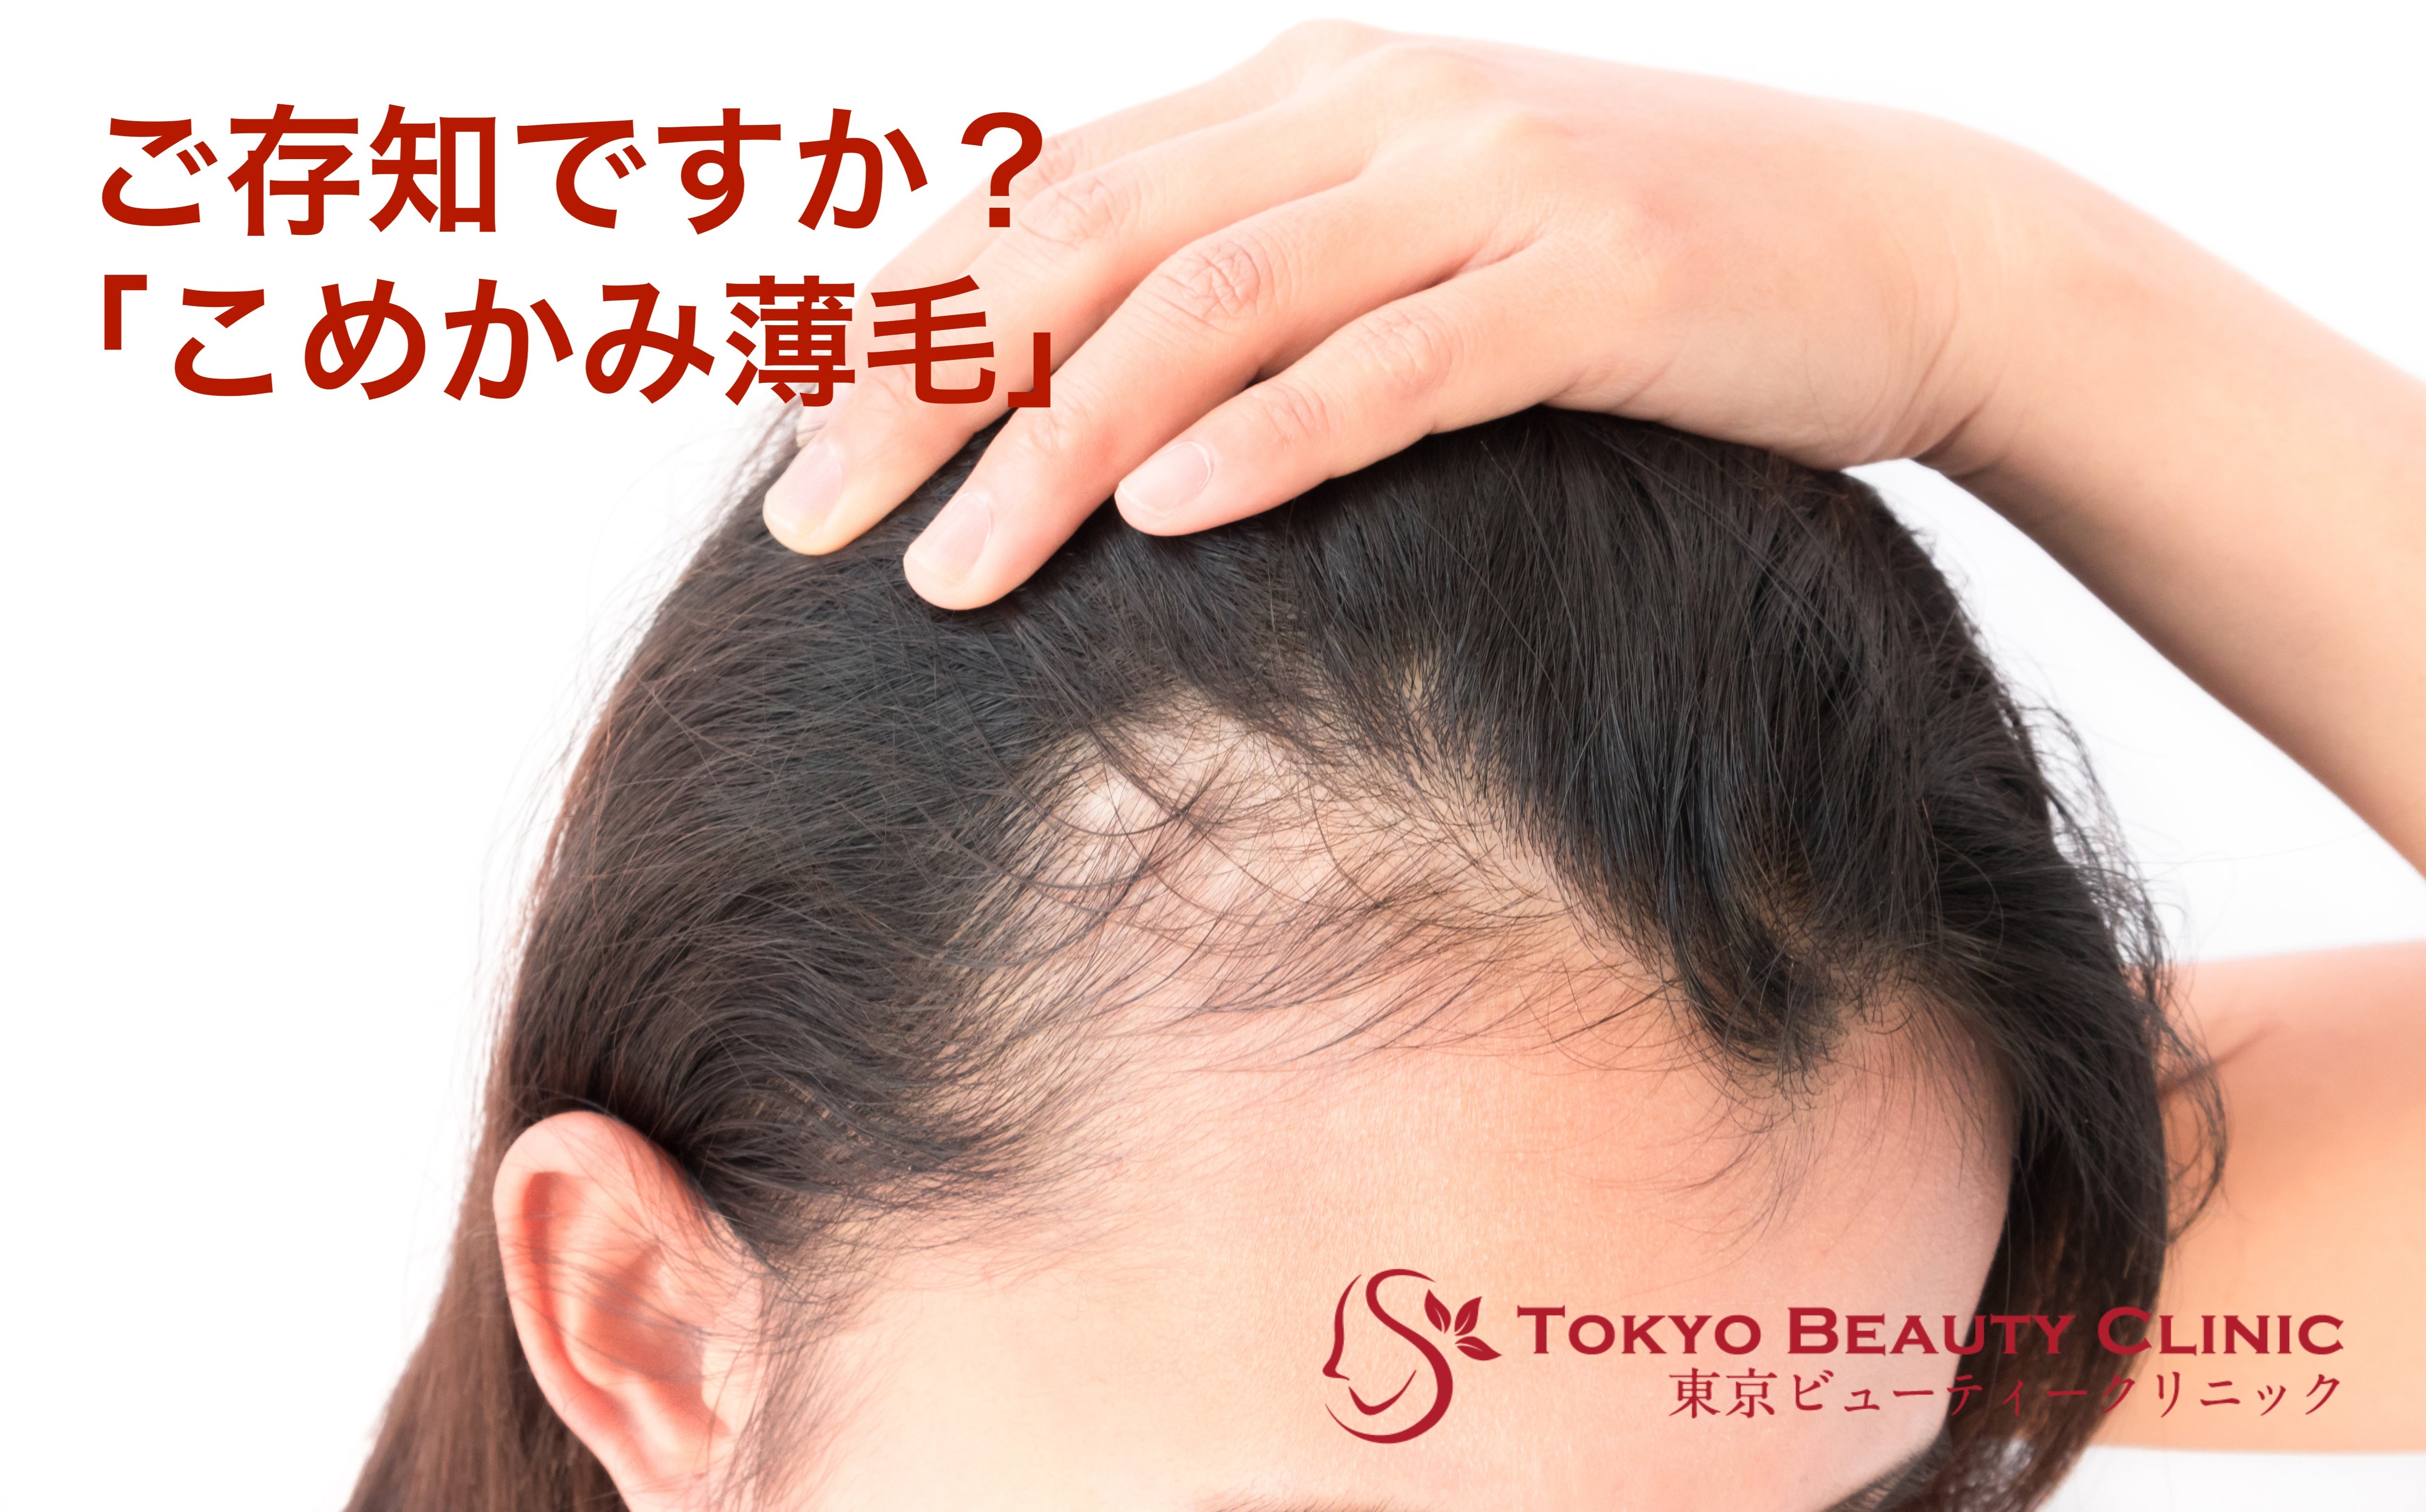 こめかみ薄毛ってご存知ですか 女性の発毛専門クリニック東京